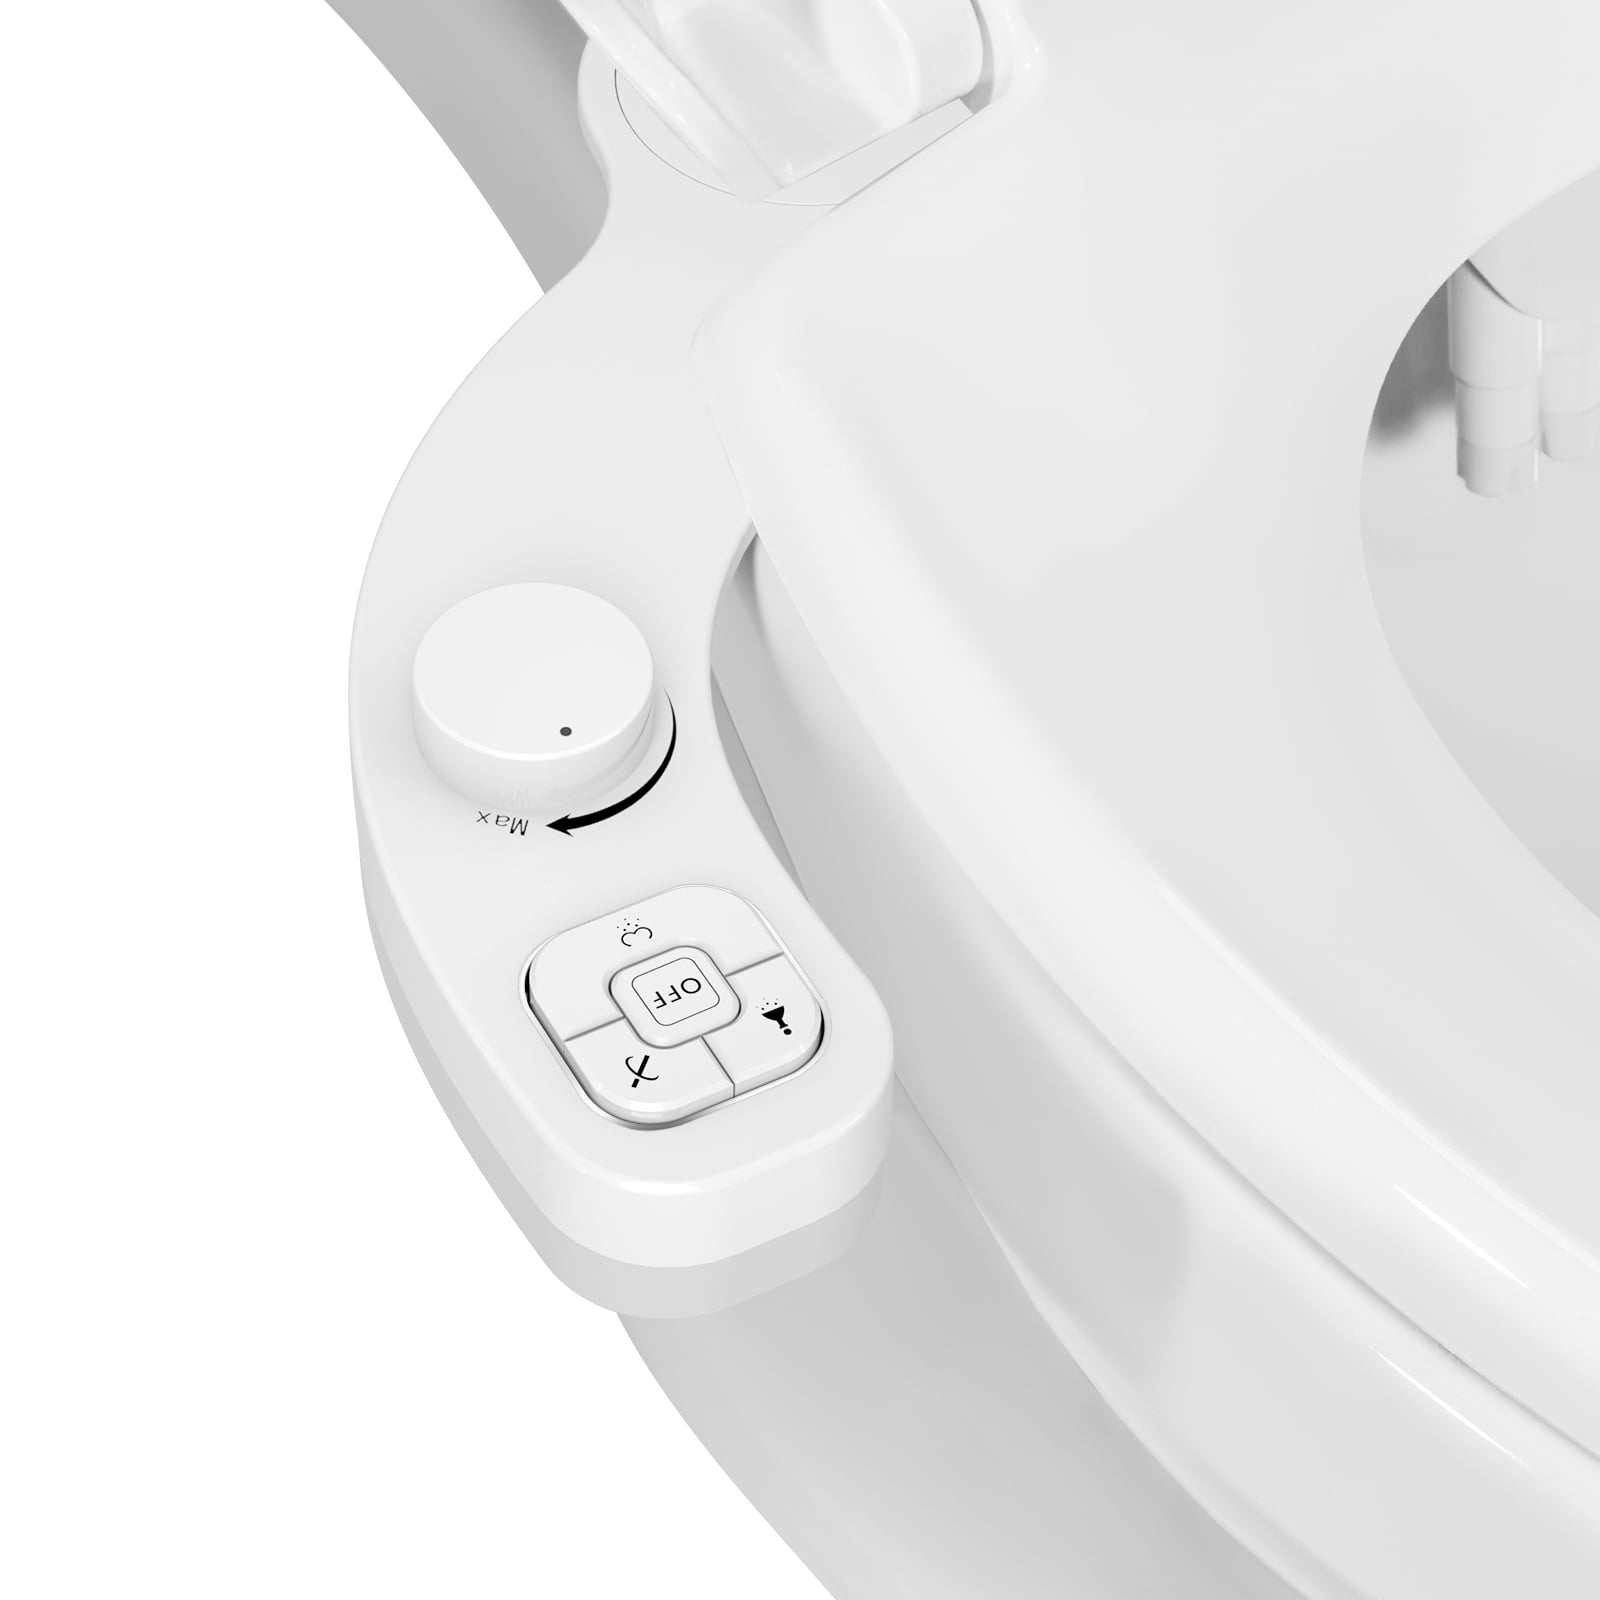 Bidet Attachment - SAMODRA Non-electric Cold Water Bidet Toilet Seat  Attachment